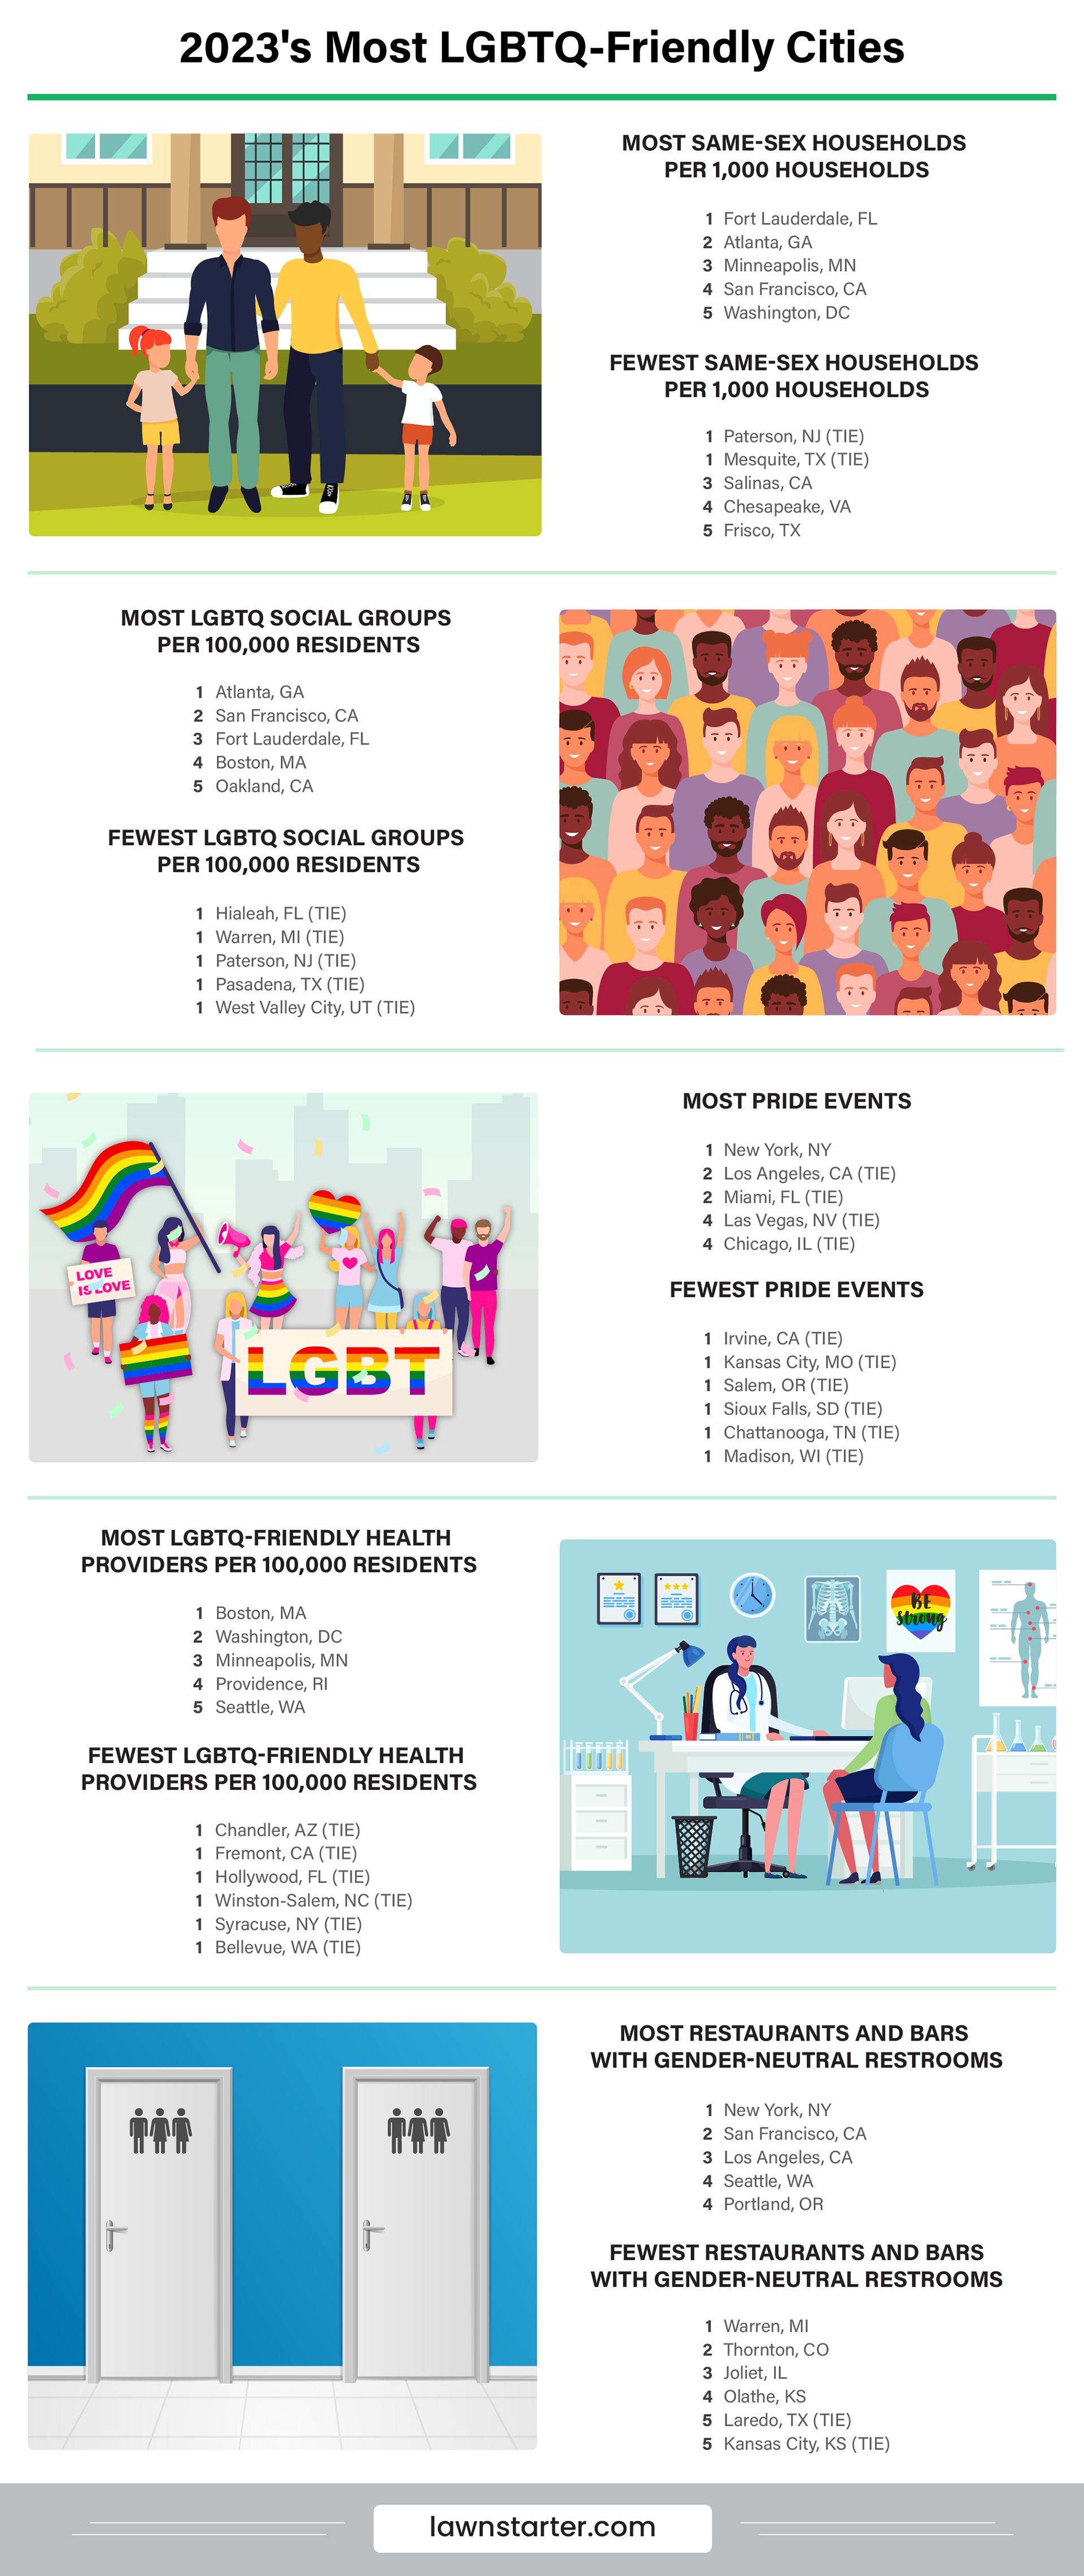 2023’s Most LGBTQ-Friendly Cities